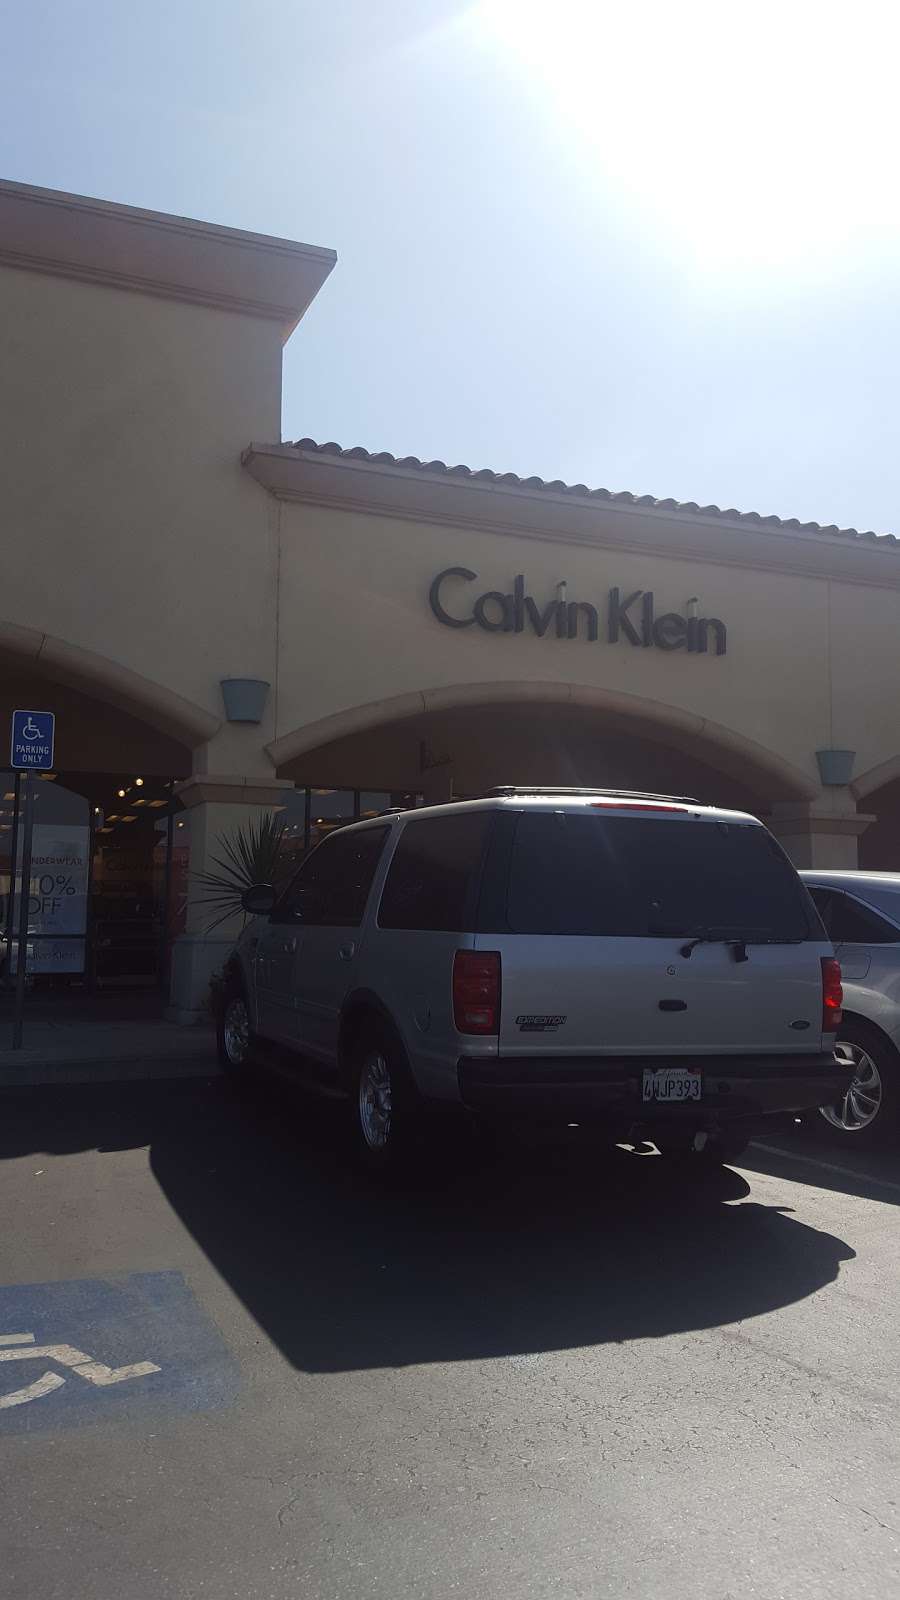 Calvin Klein Outlet | 950 Camarillo Center Dr #958, Camarillo, CA 93010, USA | Phone: (805) 482-9004